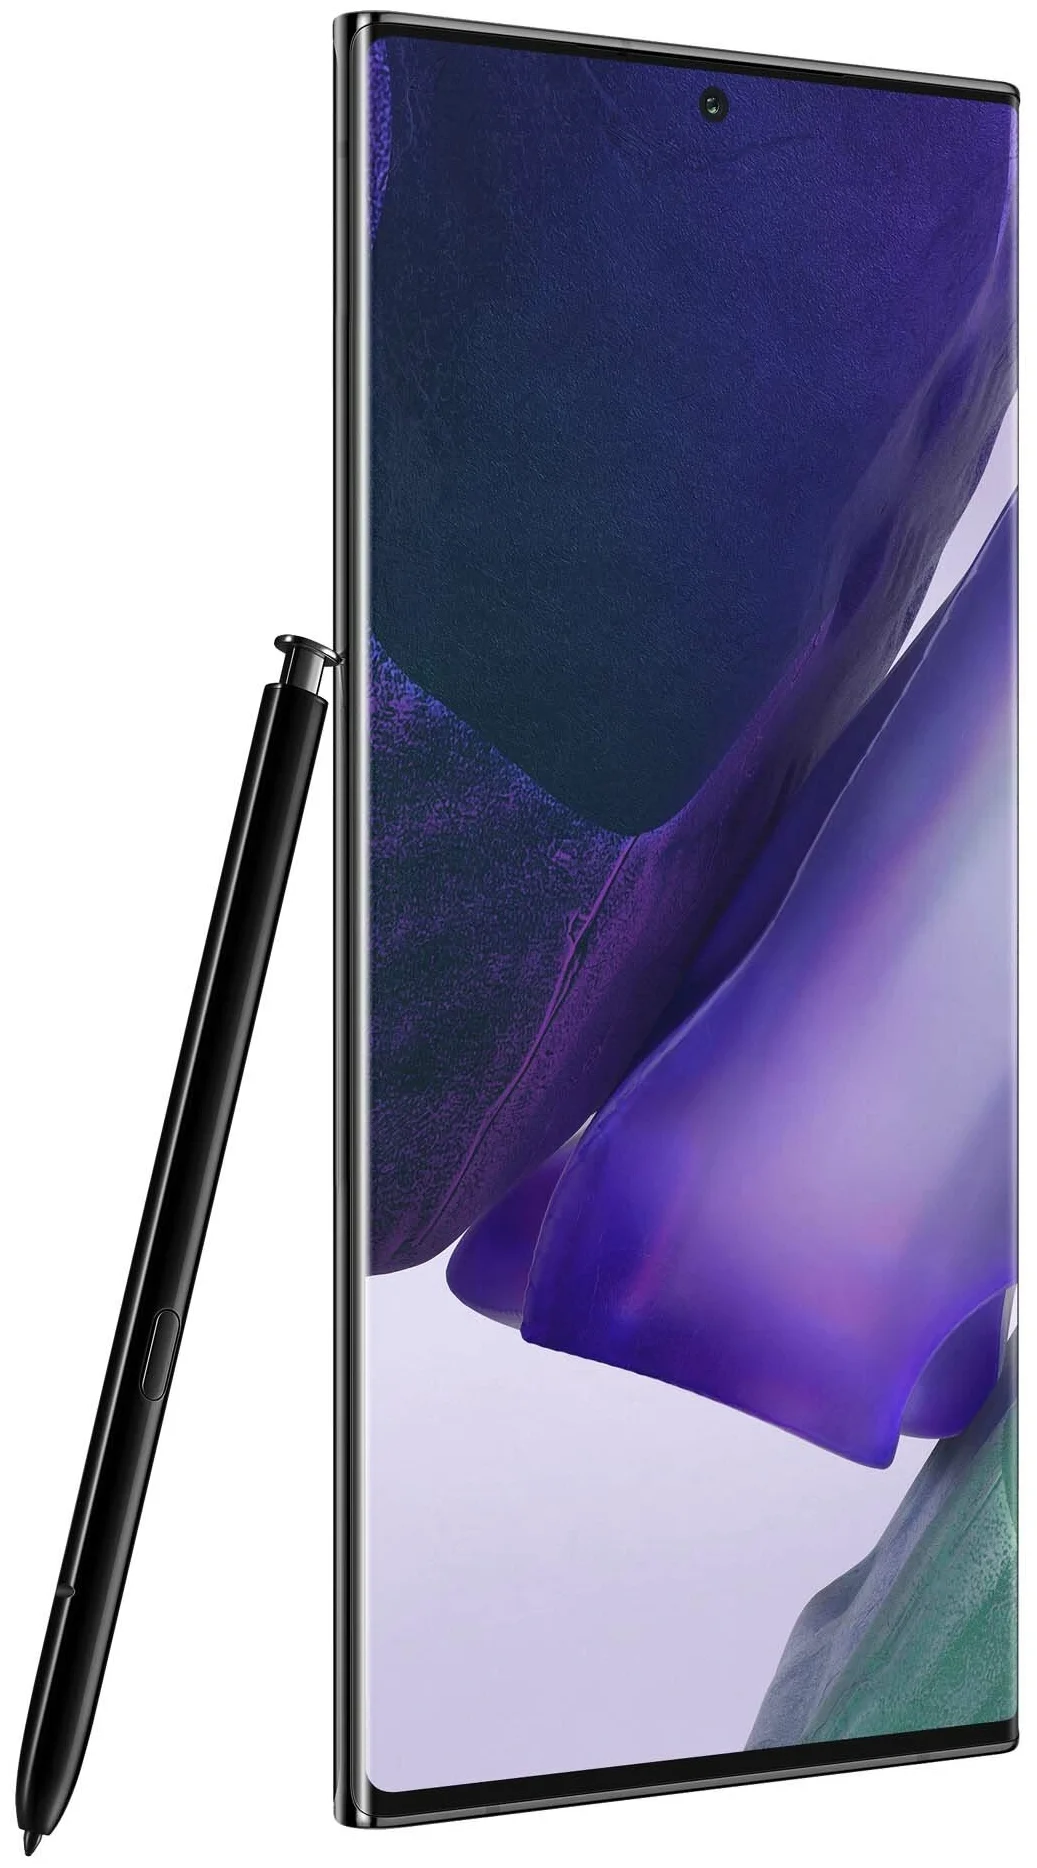 Samsung Galaxy Note 20 Ultra (SM-N985F) - аккумулятор: 4500 мА·ч